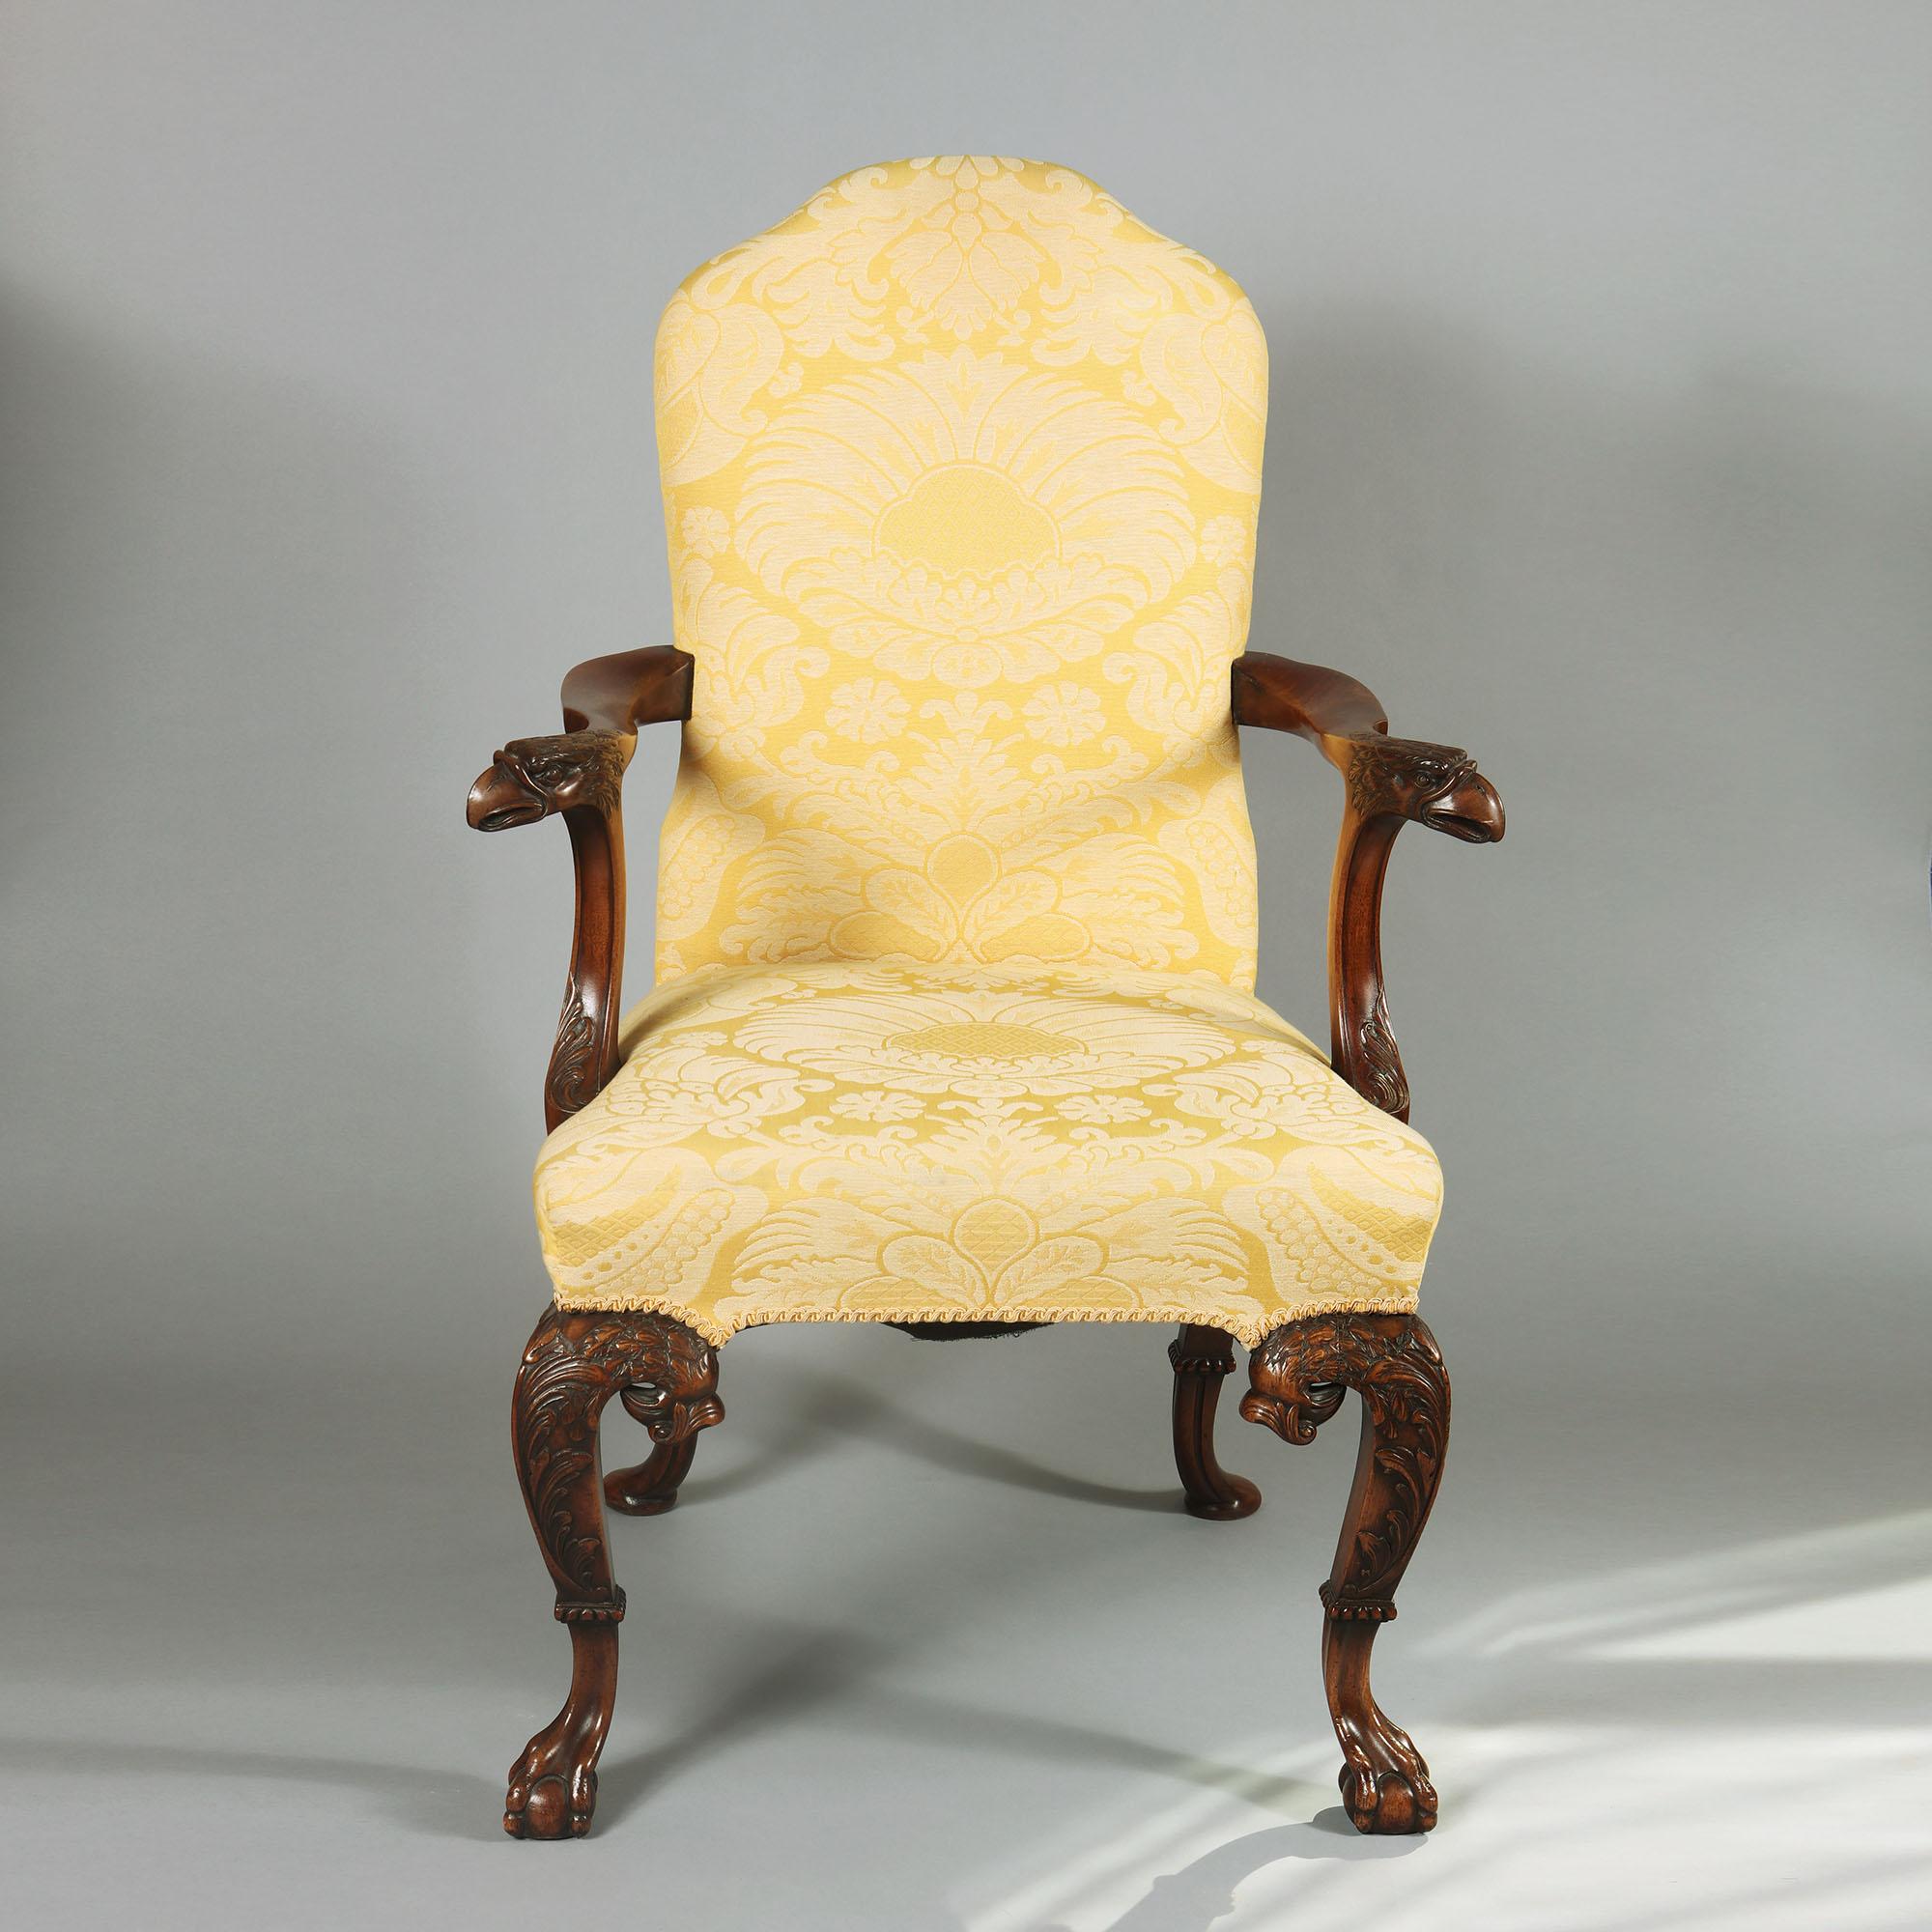 Ein offener Sessel aus Mahagoni in George I. Manier, mit Schnitzereien von echtem Stil und Schwung, mit feinen Adlerkopfanschlüssen an jedem Arm, mit ausgeprägter Rollen- und Federarbeit an den gewölbten Cabriole-Beinen über ausgezeichneten